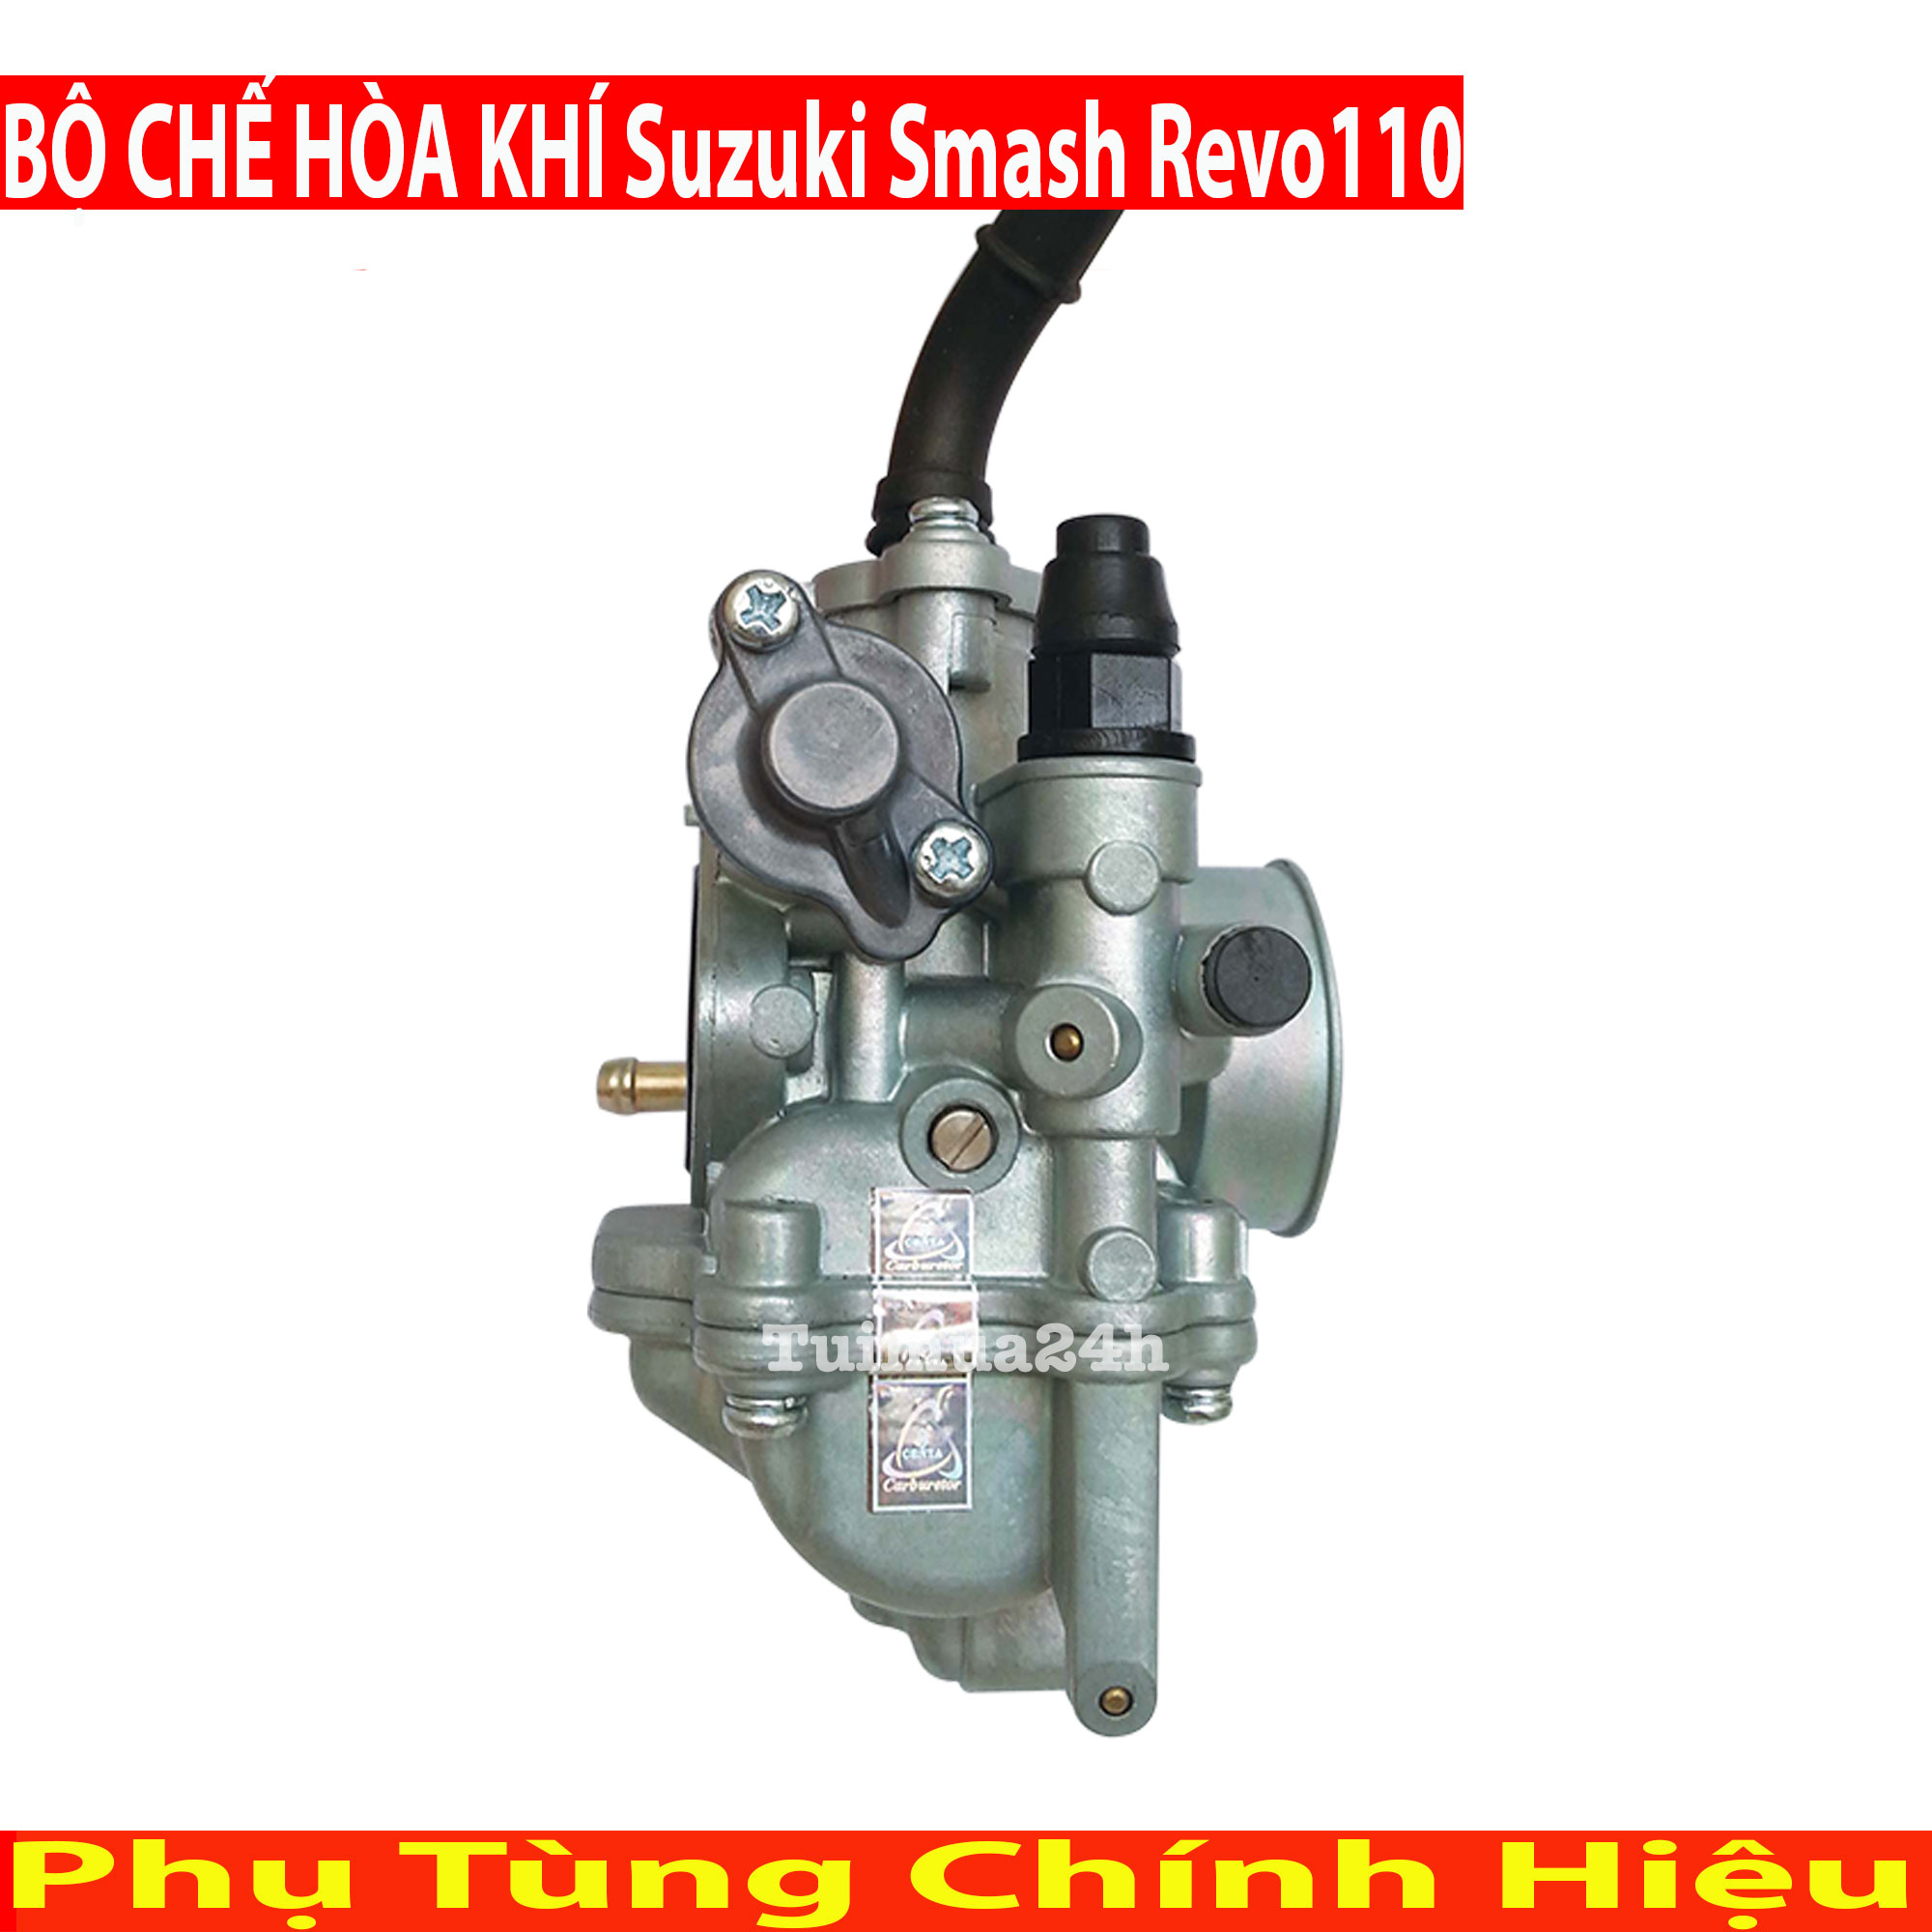 SUZUKI SMASH 110cc bản giới hạn REVO  xe chơi bời rất sang trọng vip Tại  Hà Nội  RaoXYZ